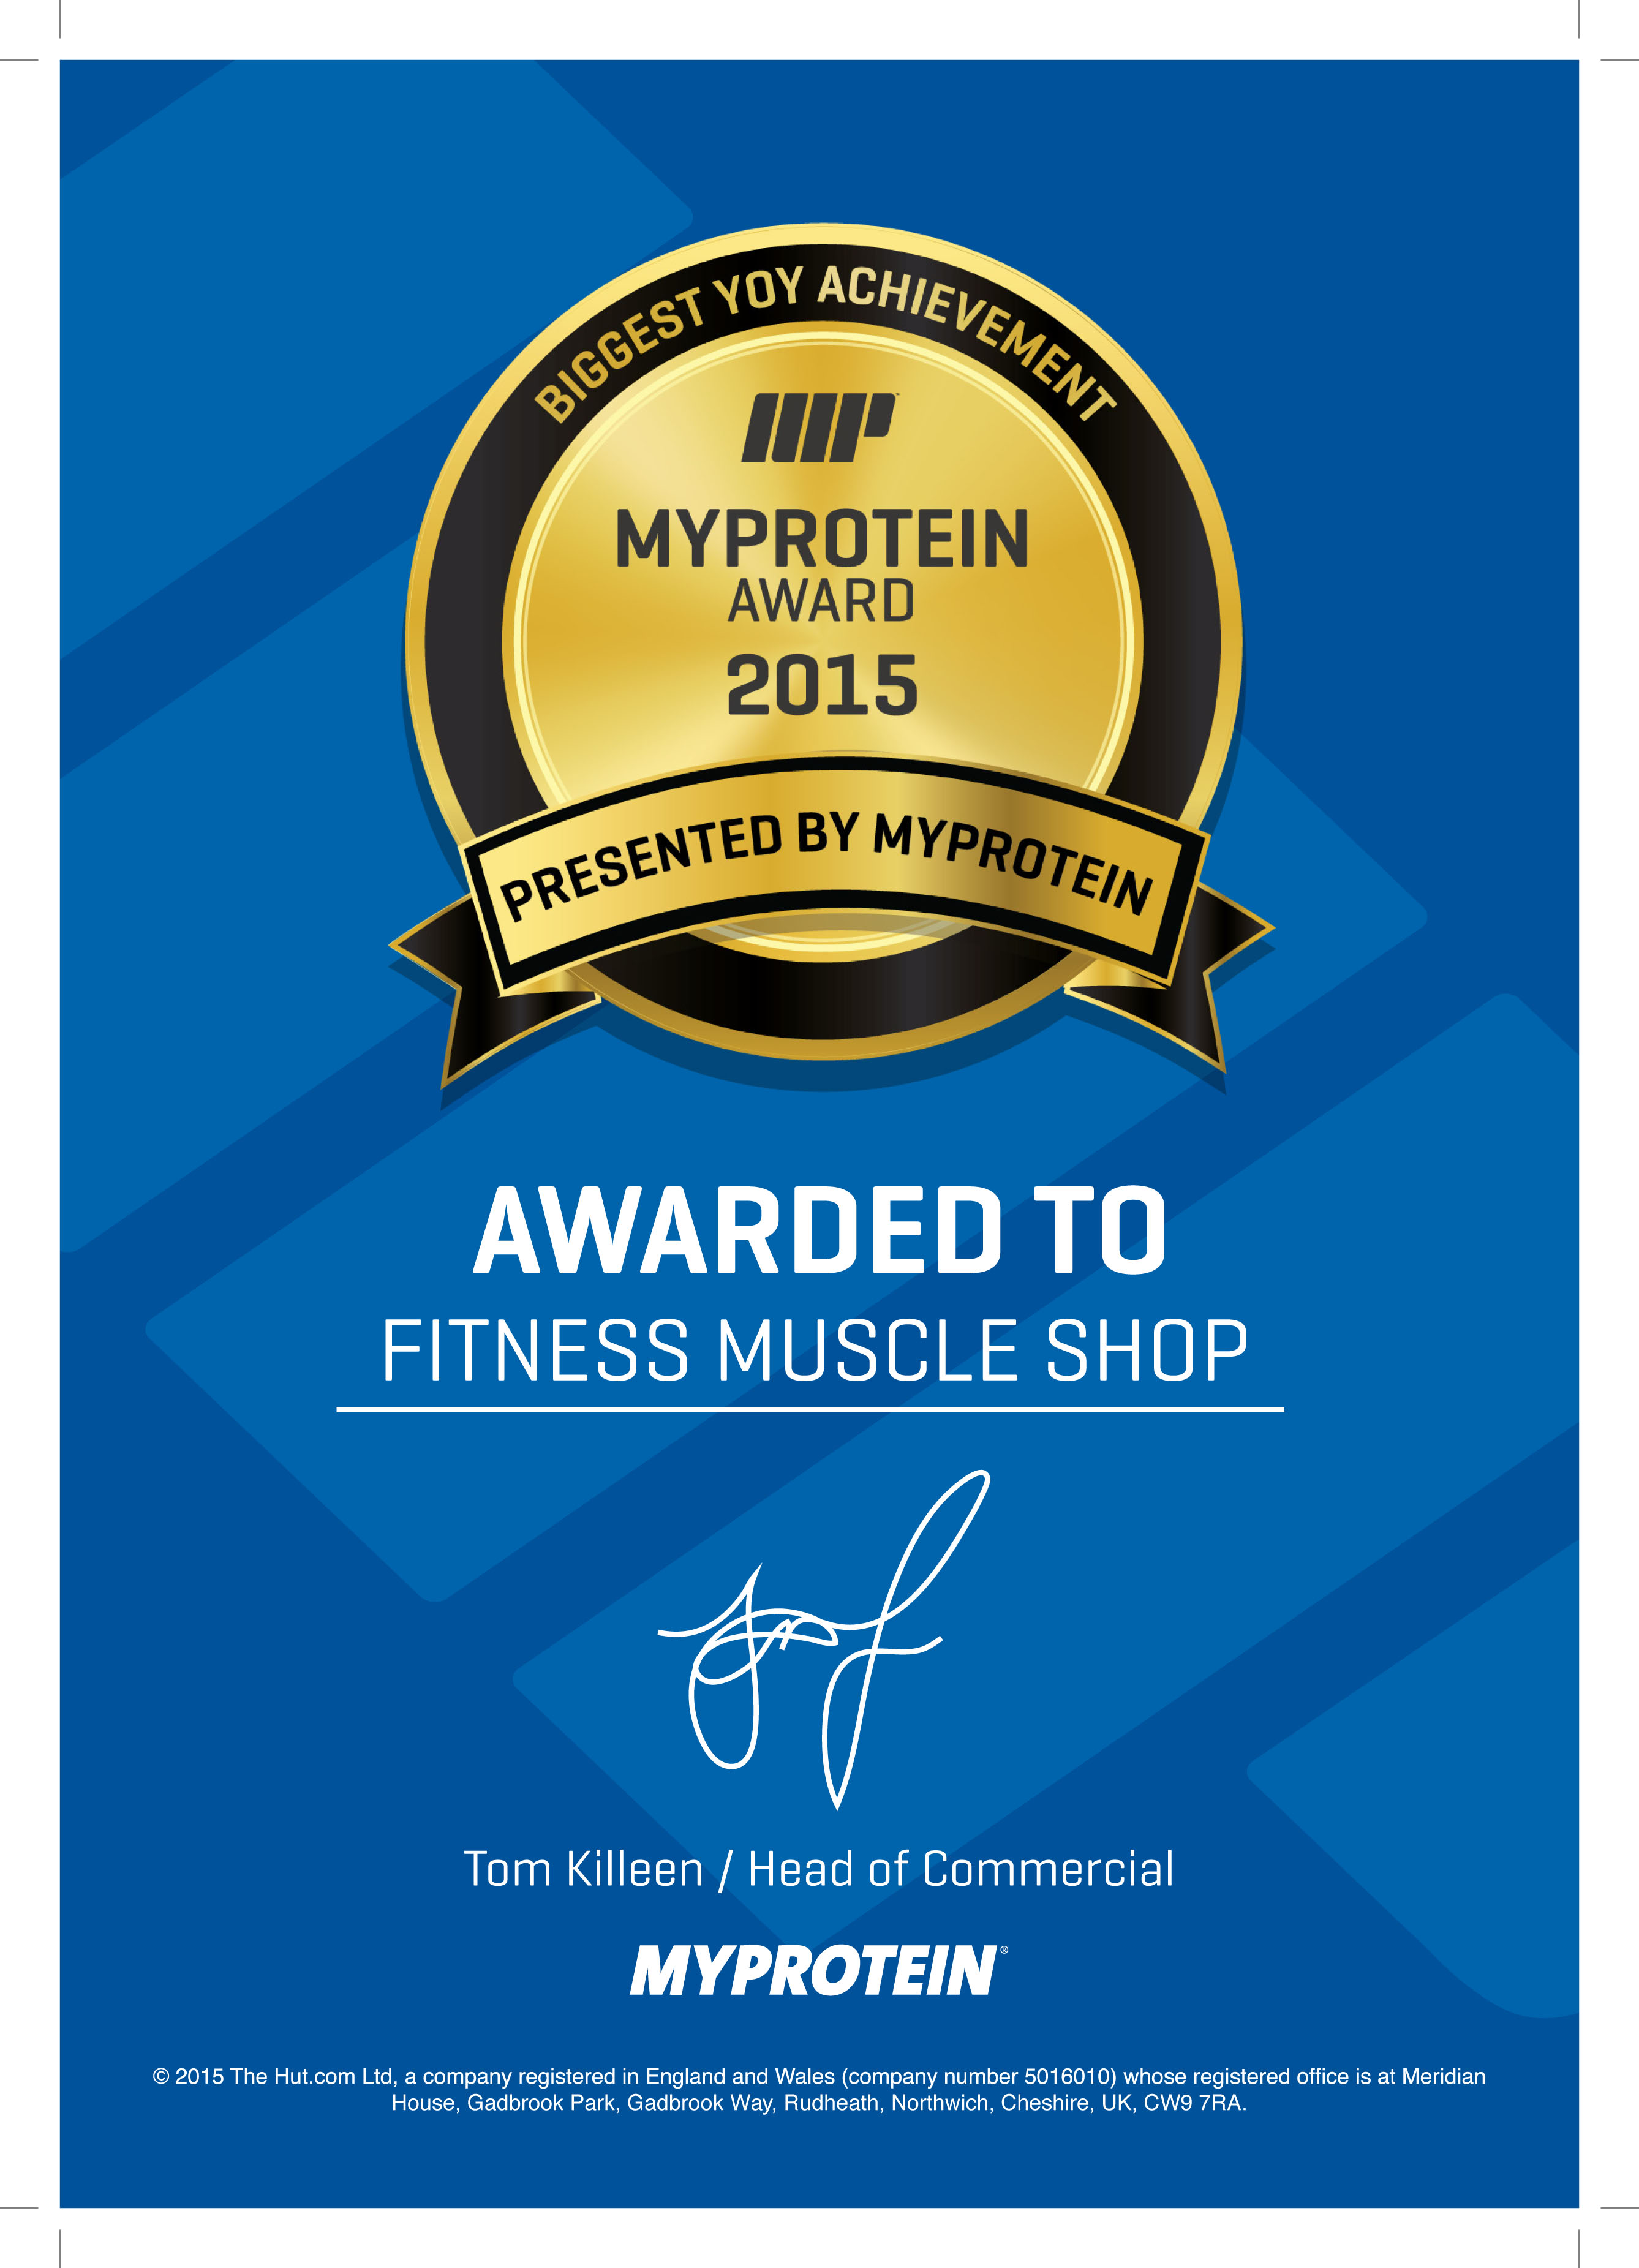 Nejlepší obchodník roku firmy MyProtein za rok 2015 | FitnessMuscle.eu